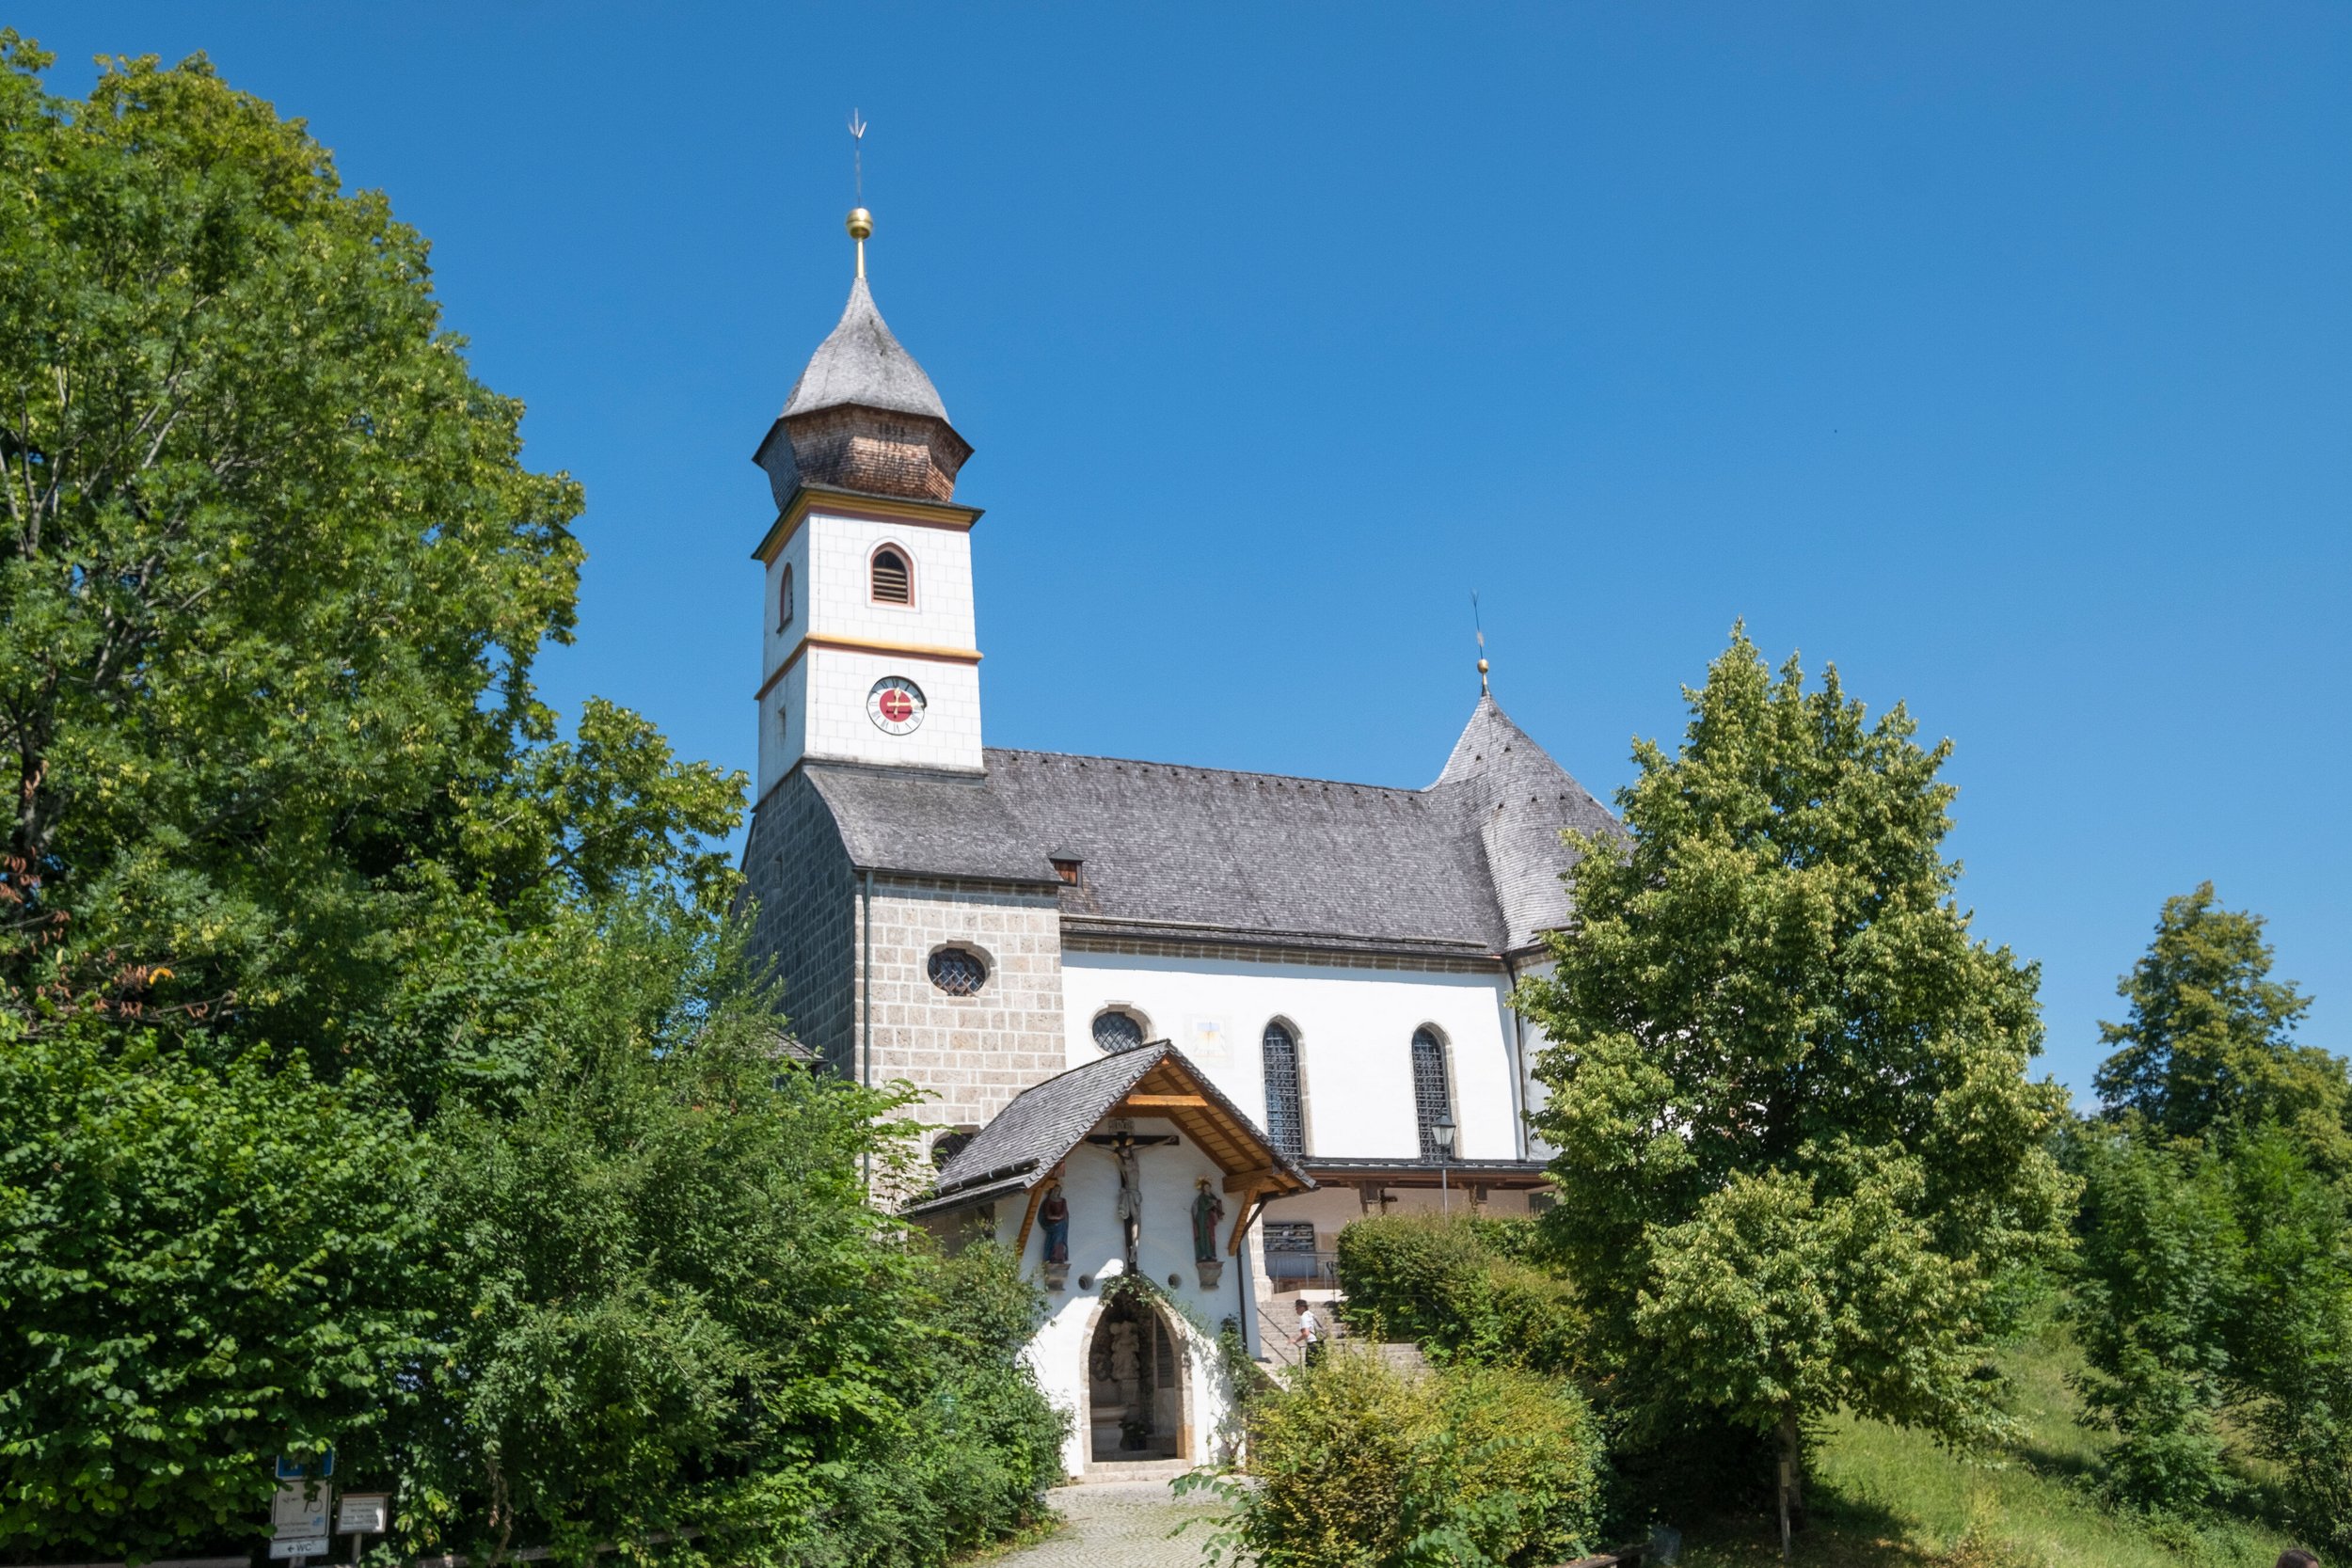 Maria Eck church near Siegsdorf